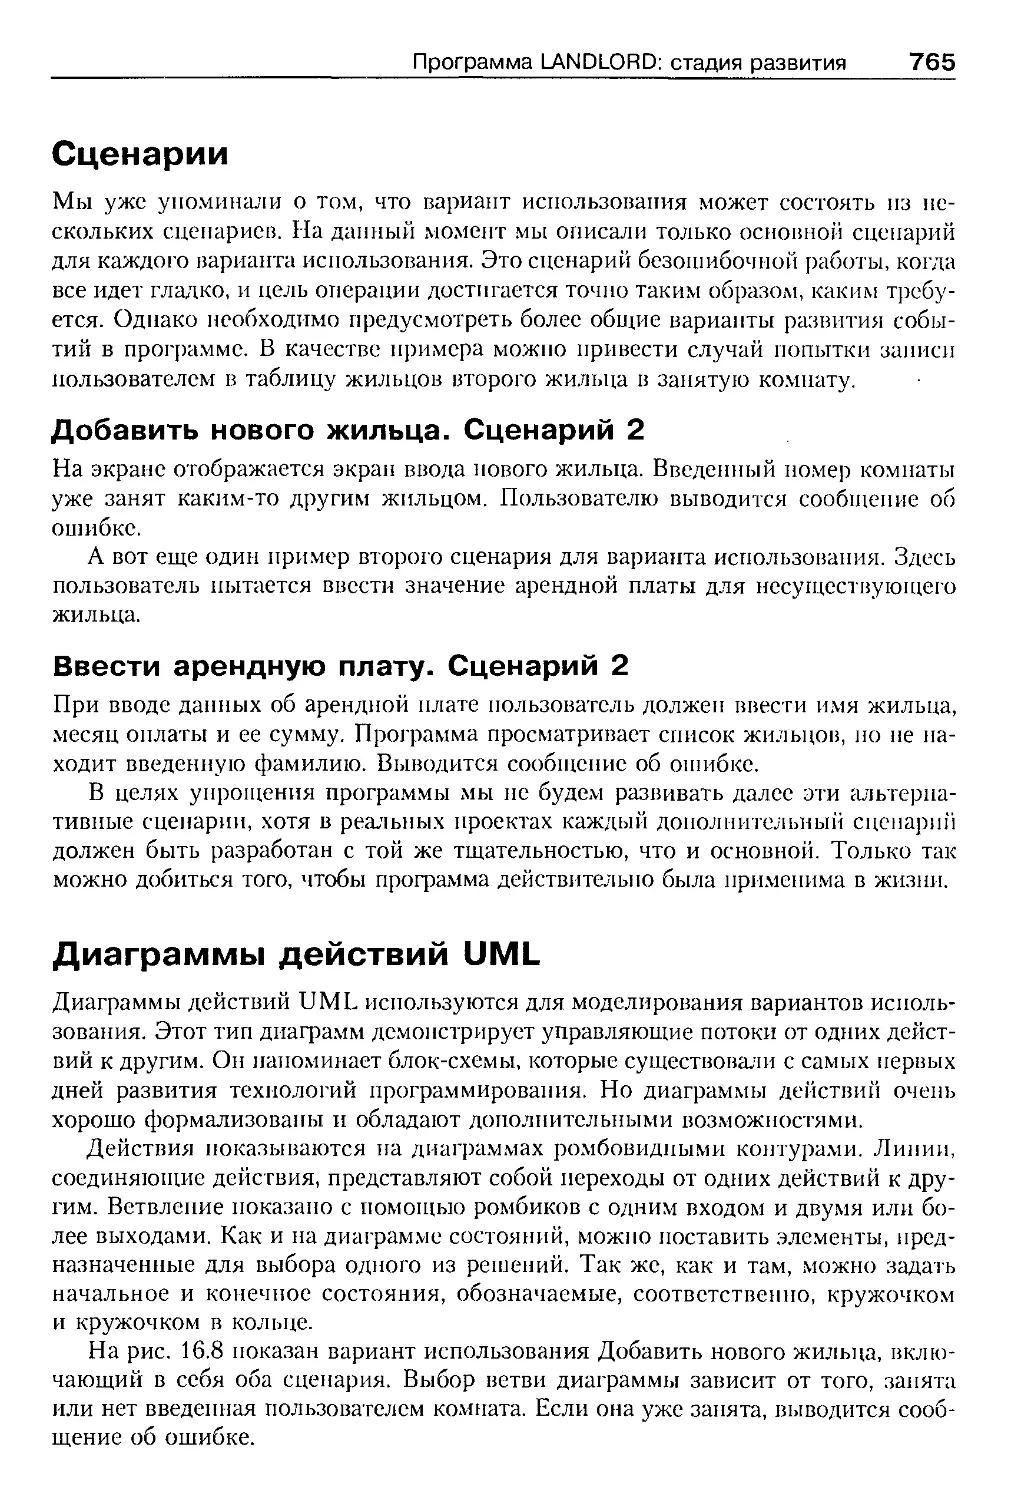 Сценарии
Диаграммы действий UML